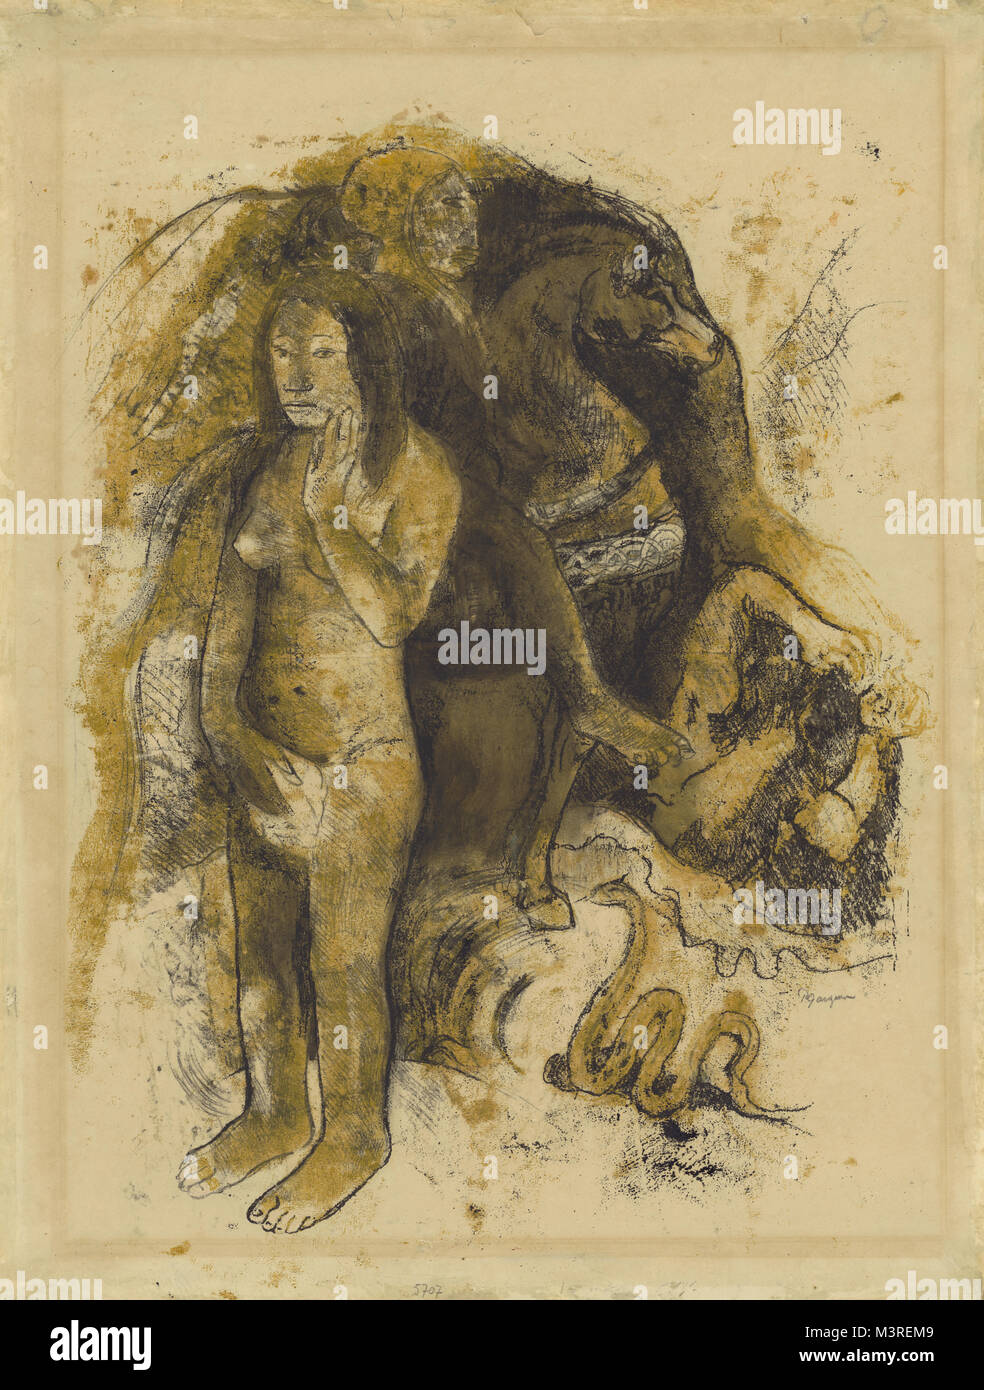 Eve ("l'Incubo"); Paul Gauguin (francese, 1848 - 1903); Sud Pacifico, Tahiti; circa 1899 - 1900; nero inchiostro della stampante color ocra, inchiostro, solvente liquido (trementina?) su carta intessuta (recto); grafite e blu pastello a matita con tracce di olio diluito medio (verso); 64,2 x 48,9 cm (25 1/4 x 19 1/4 in.); 2007.33 Foto Stock